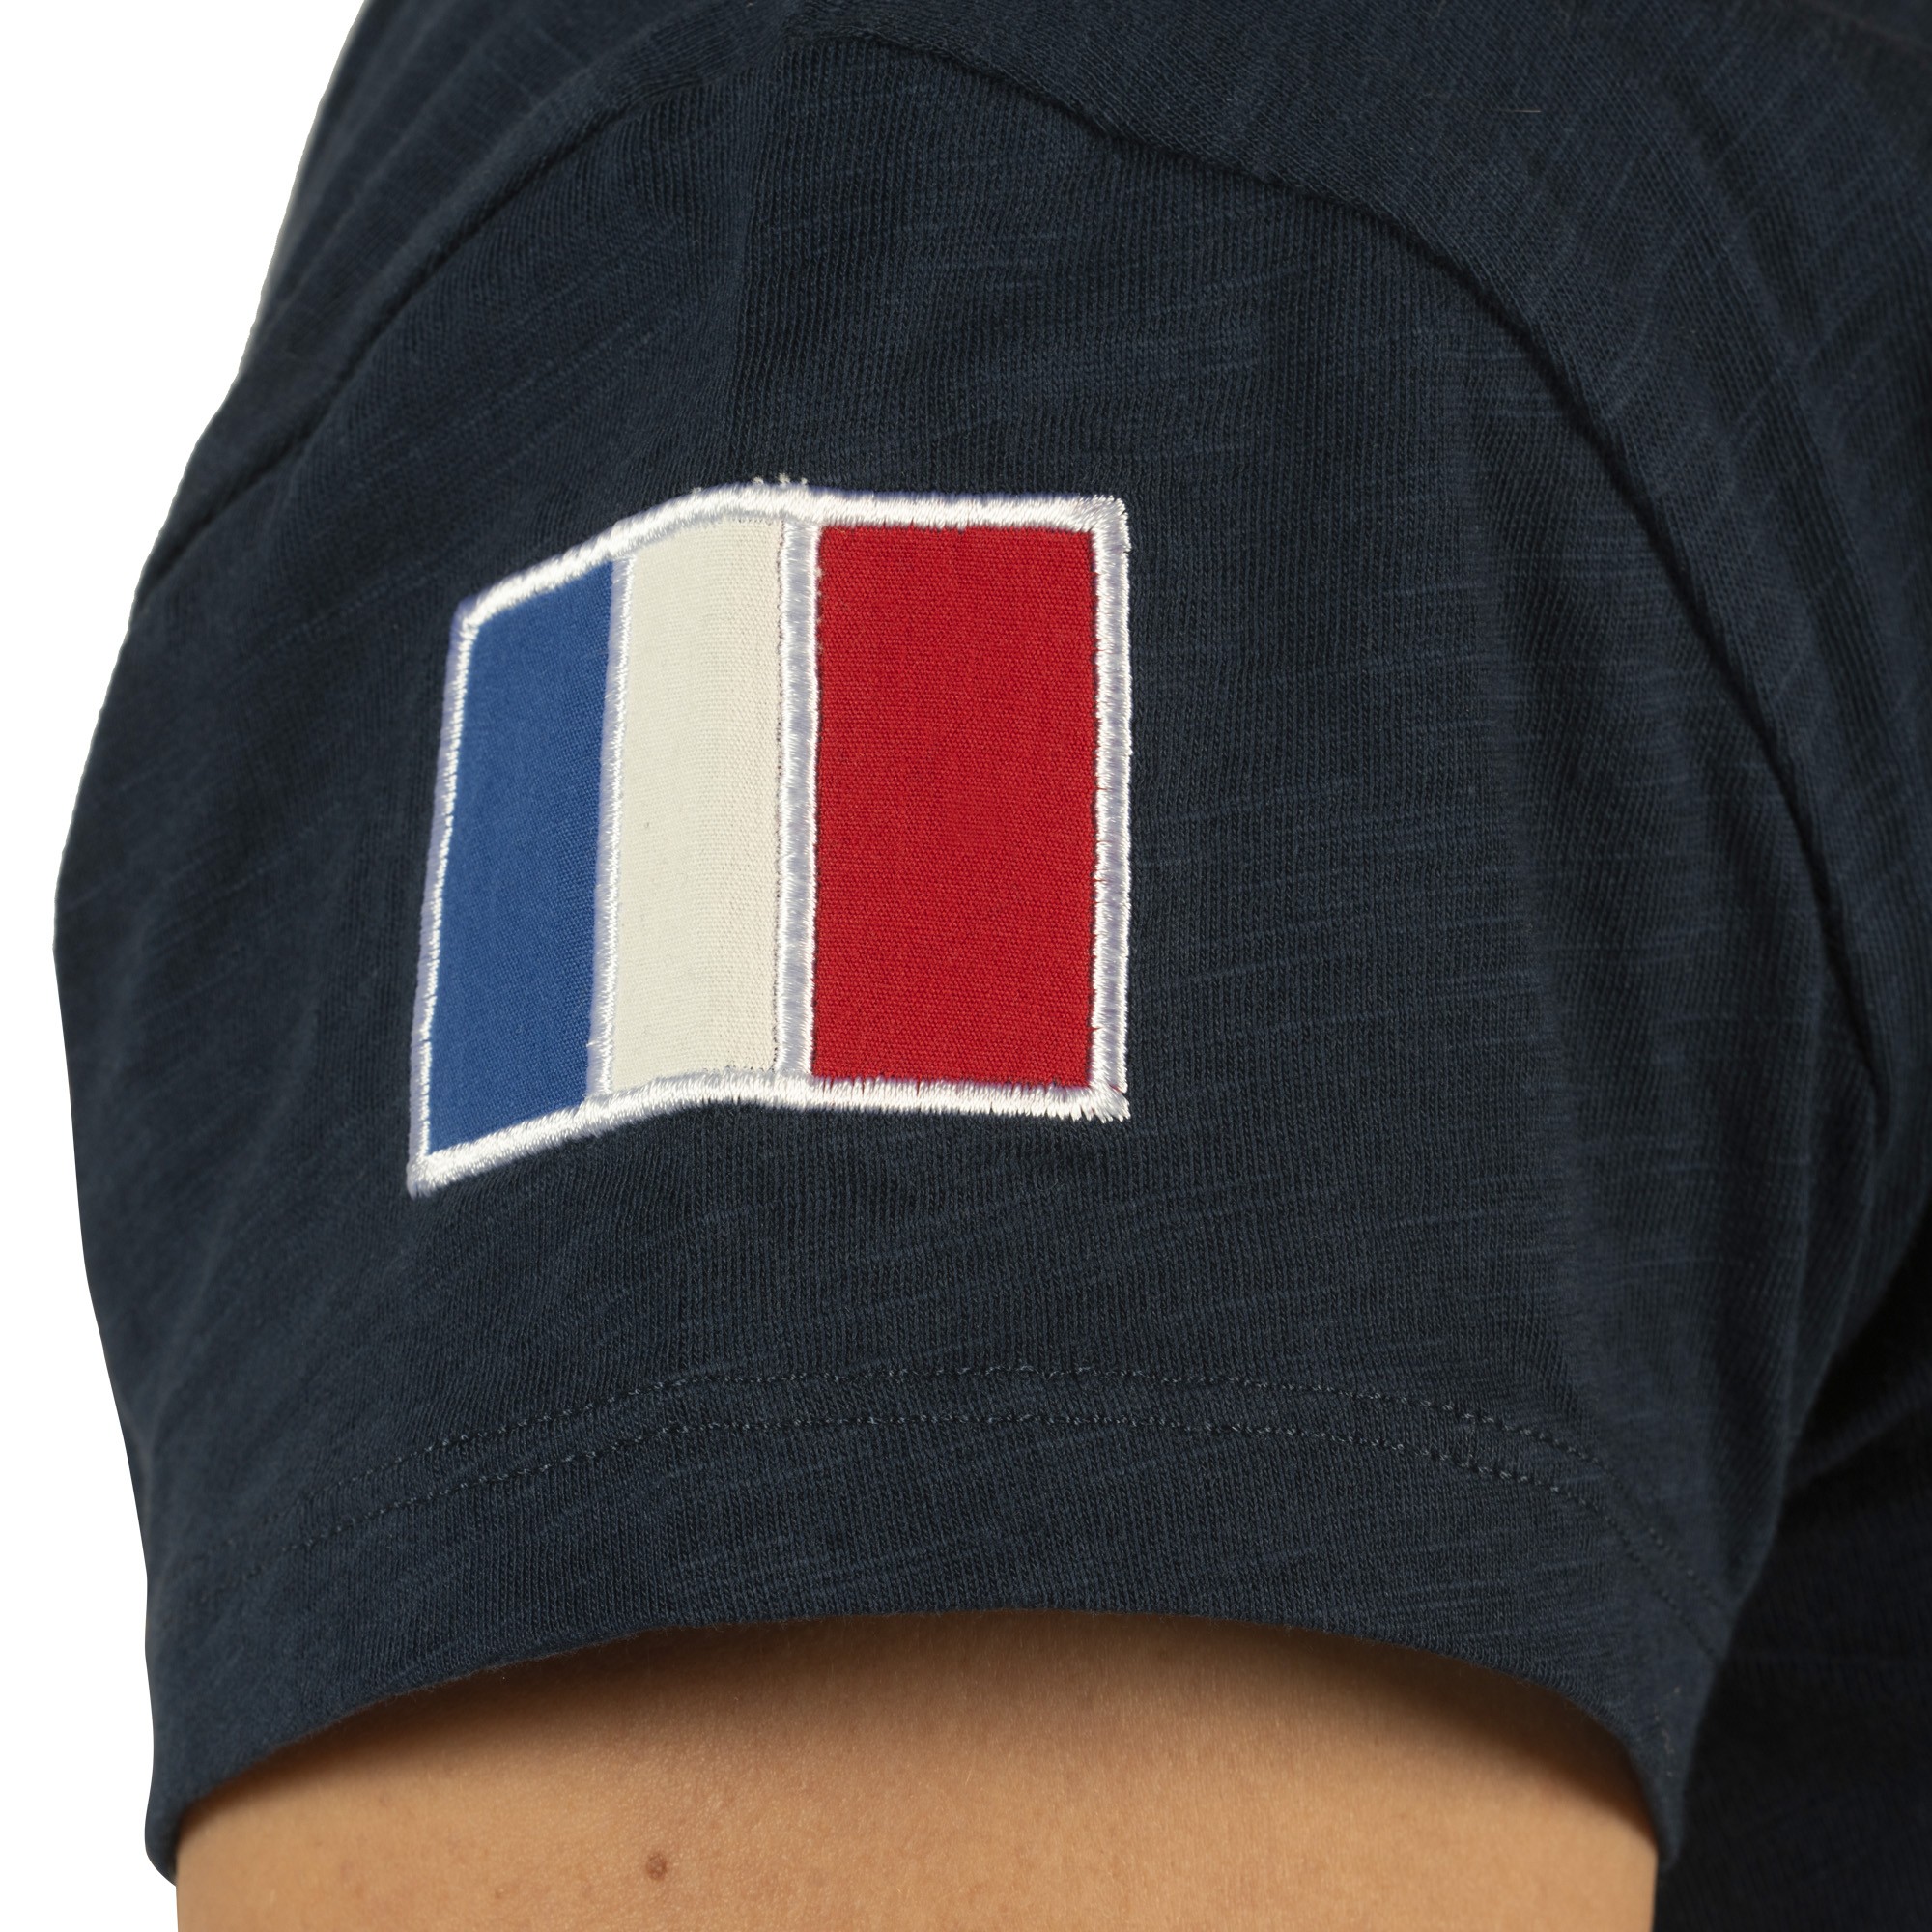 tee-shirt femme équitation flags and cup modèle france couleur marine